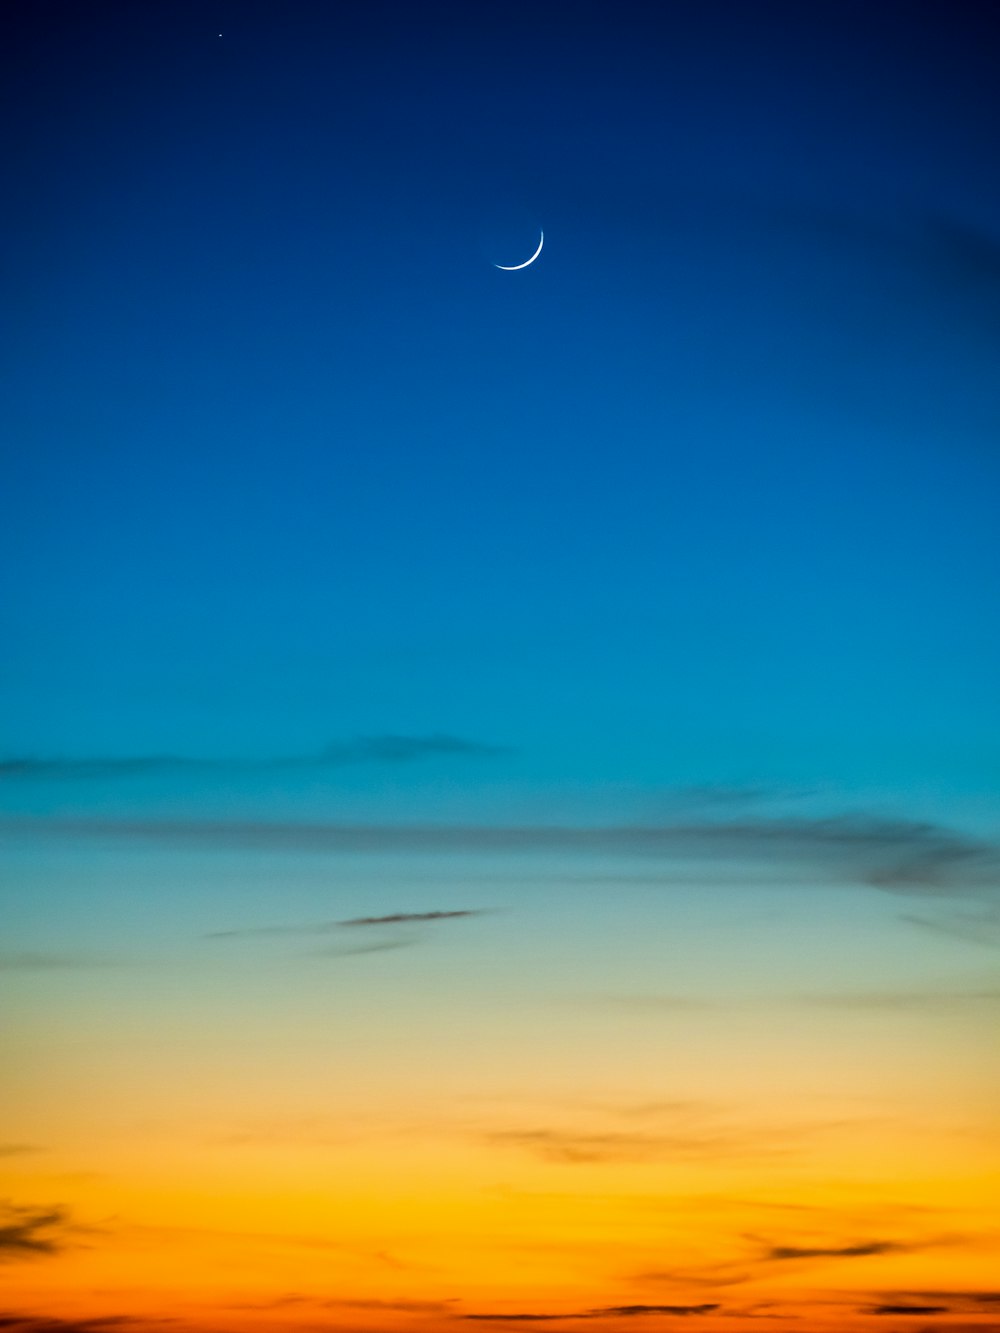 lua crescente e céu azul durante a vista da hora dourada